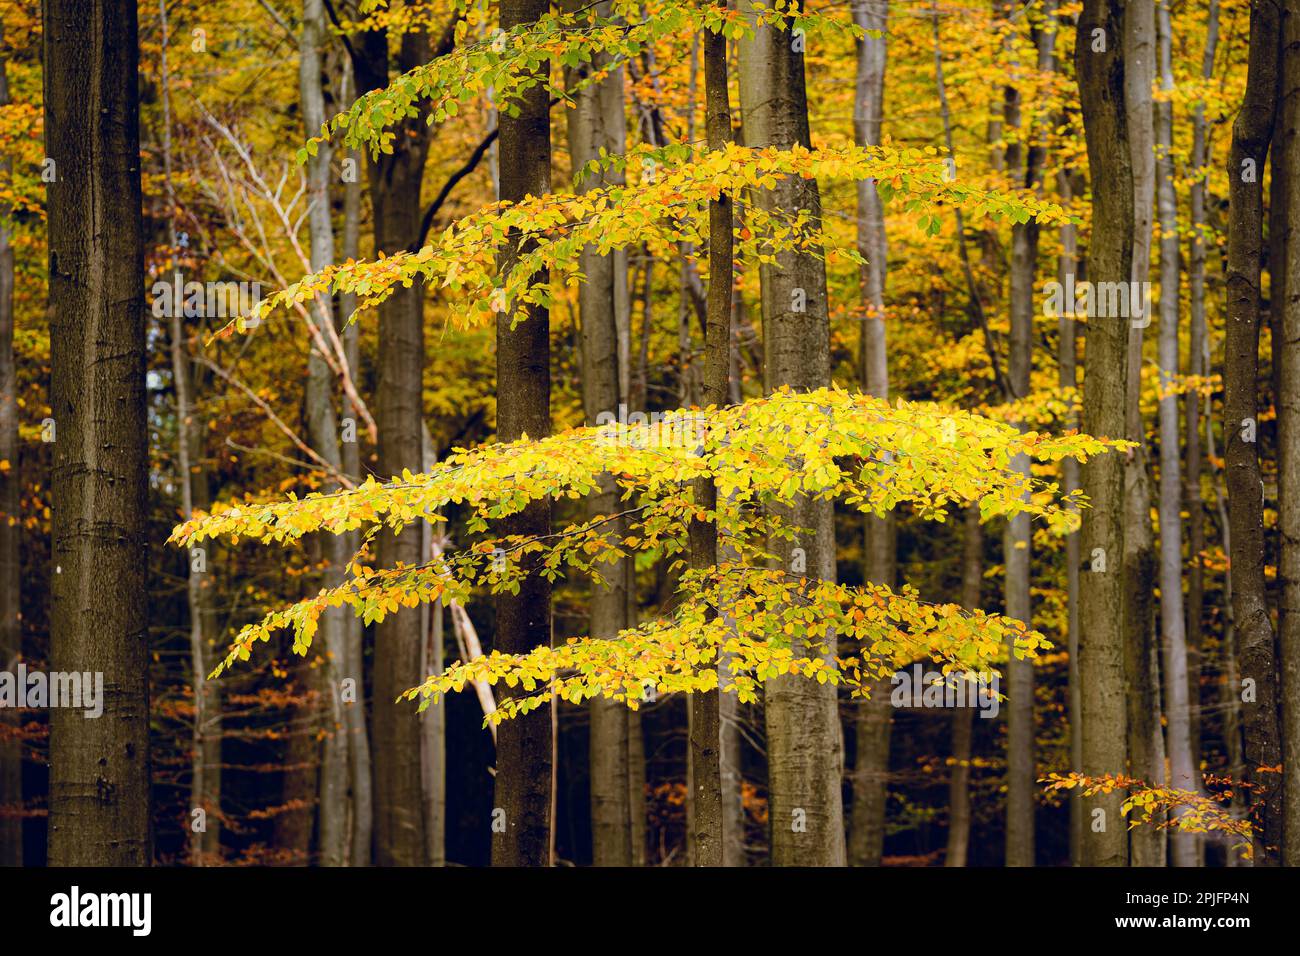 Foresta dorata con faggi, foglie colorate. Paesaggio autunnale fata. tronchi di albero. Natura, stagioni, ecologia, ambiente. Foto Stock